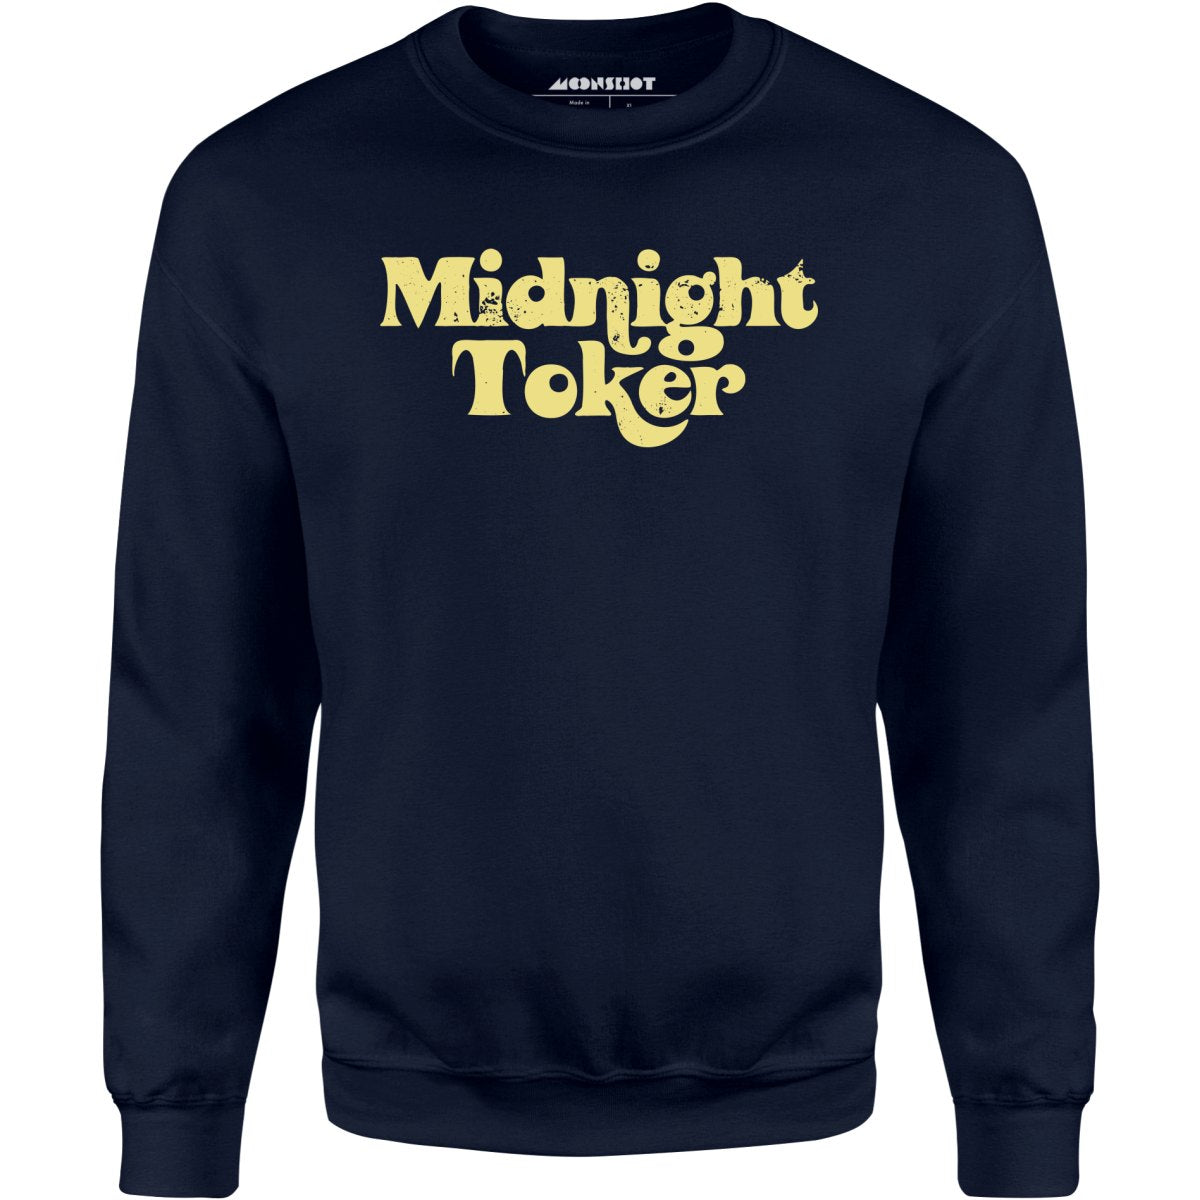 Midnight Toker - Unisex Sweatshirt